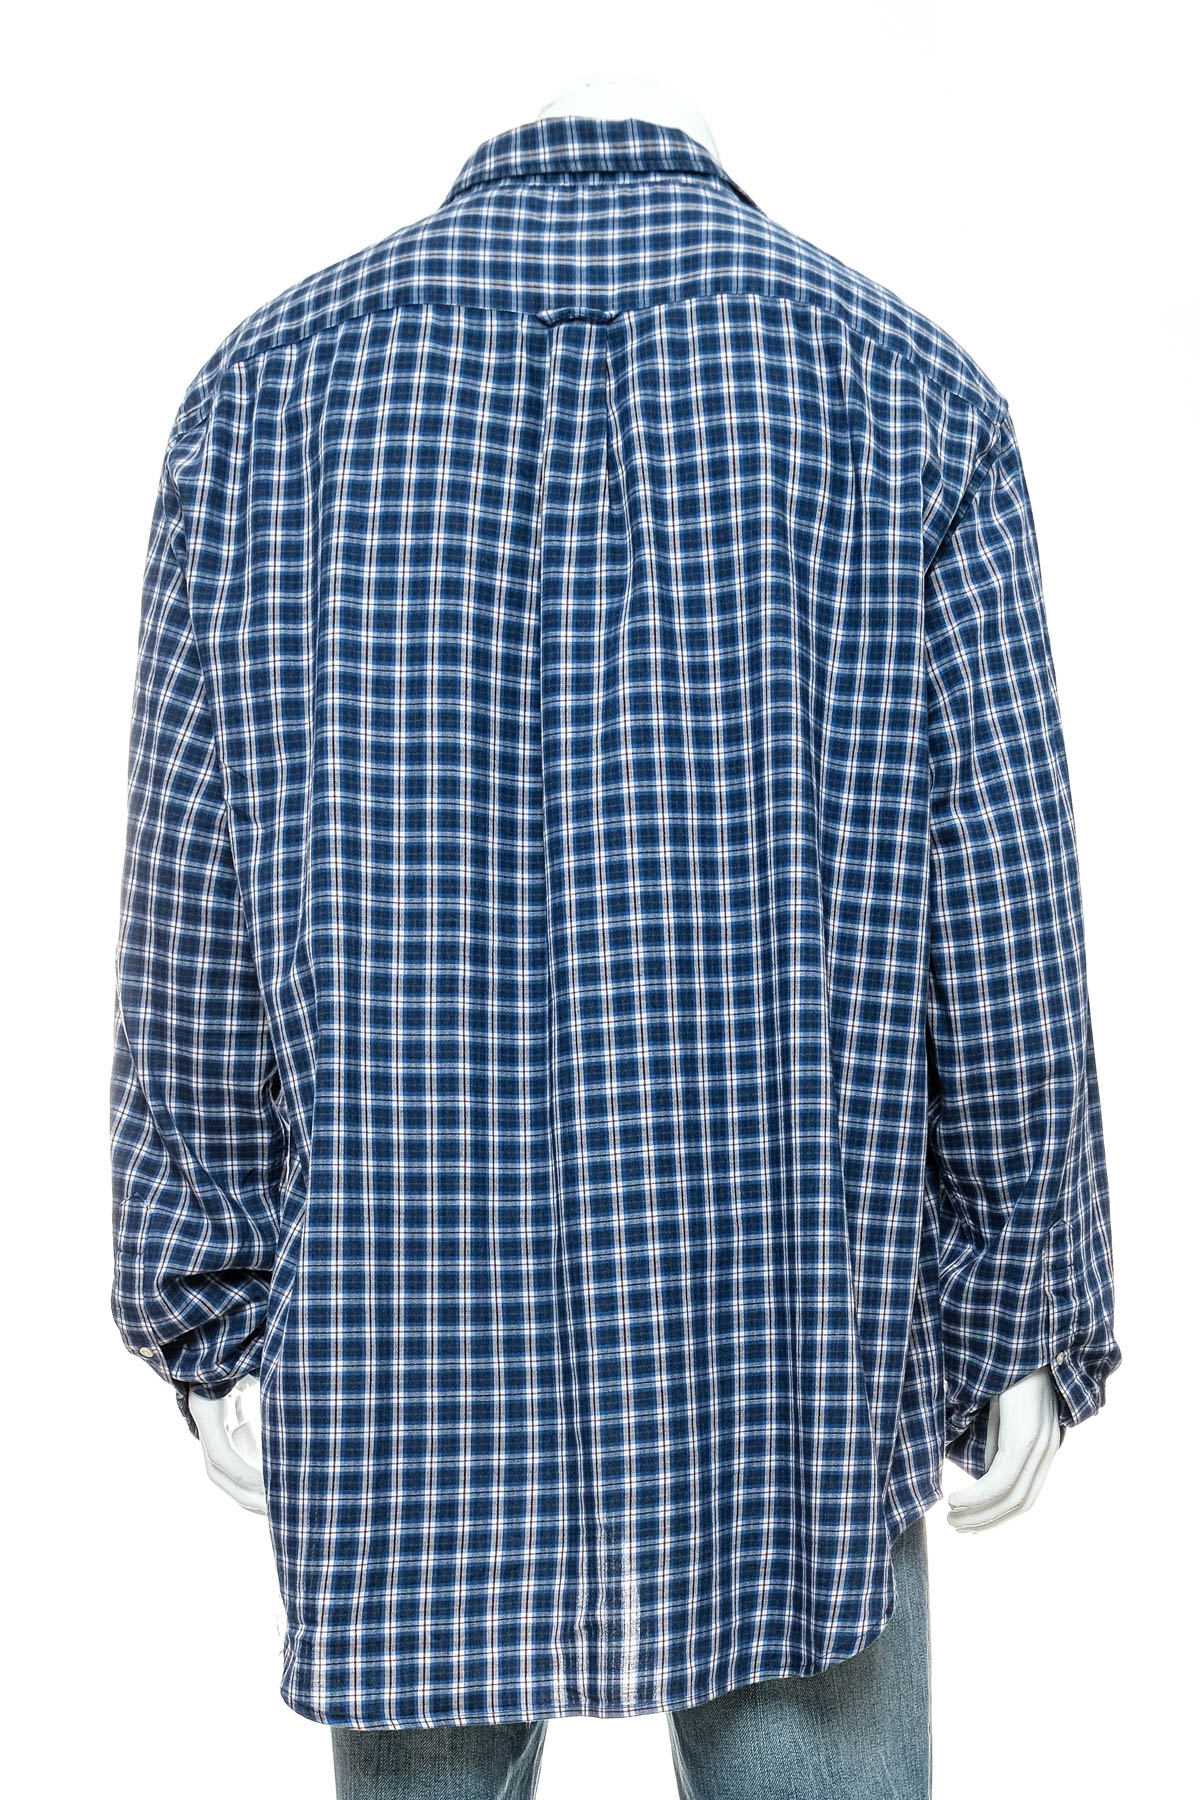 Ανδρικό πουκάμισο - Gant - 1